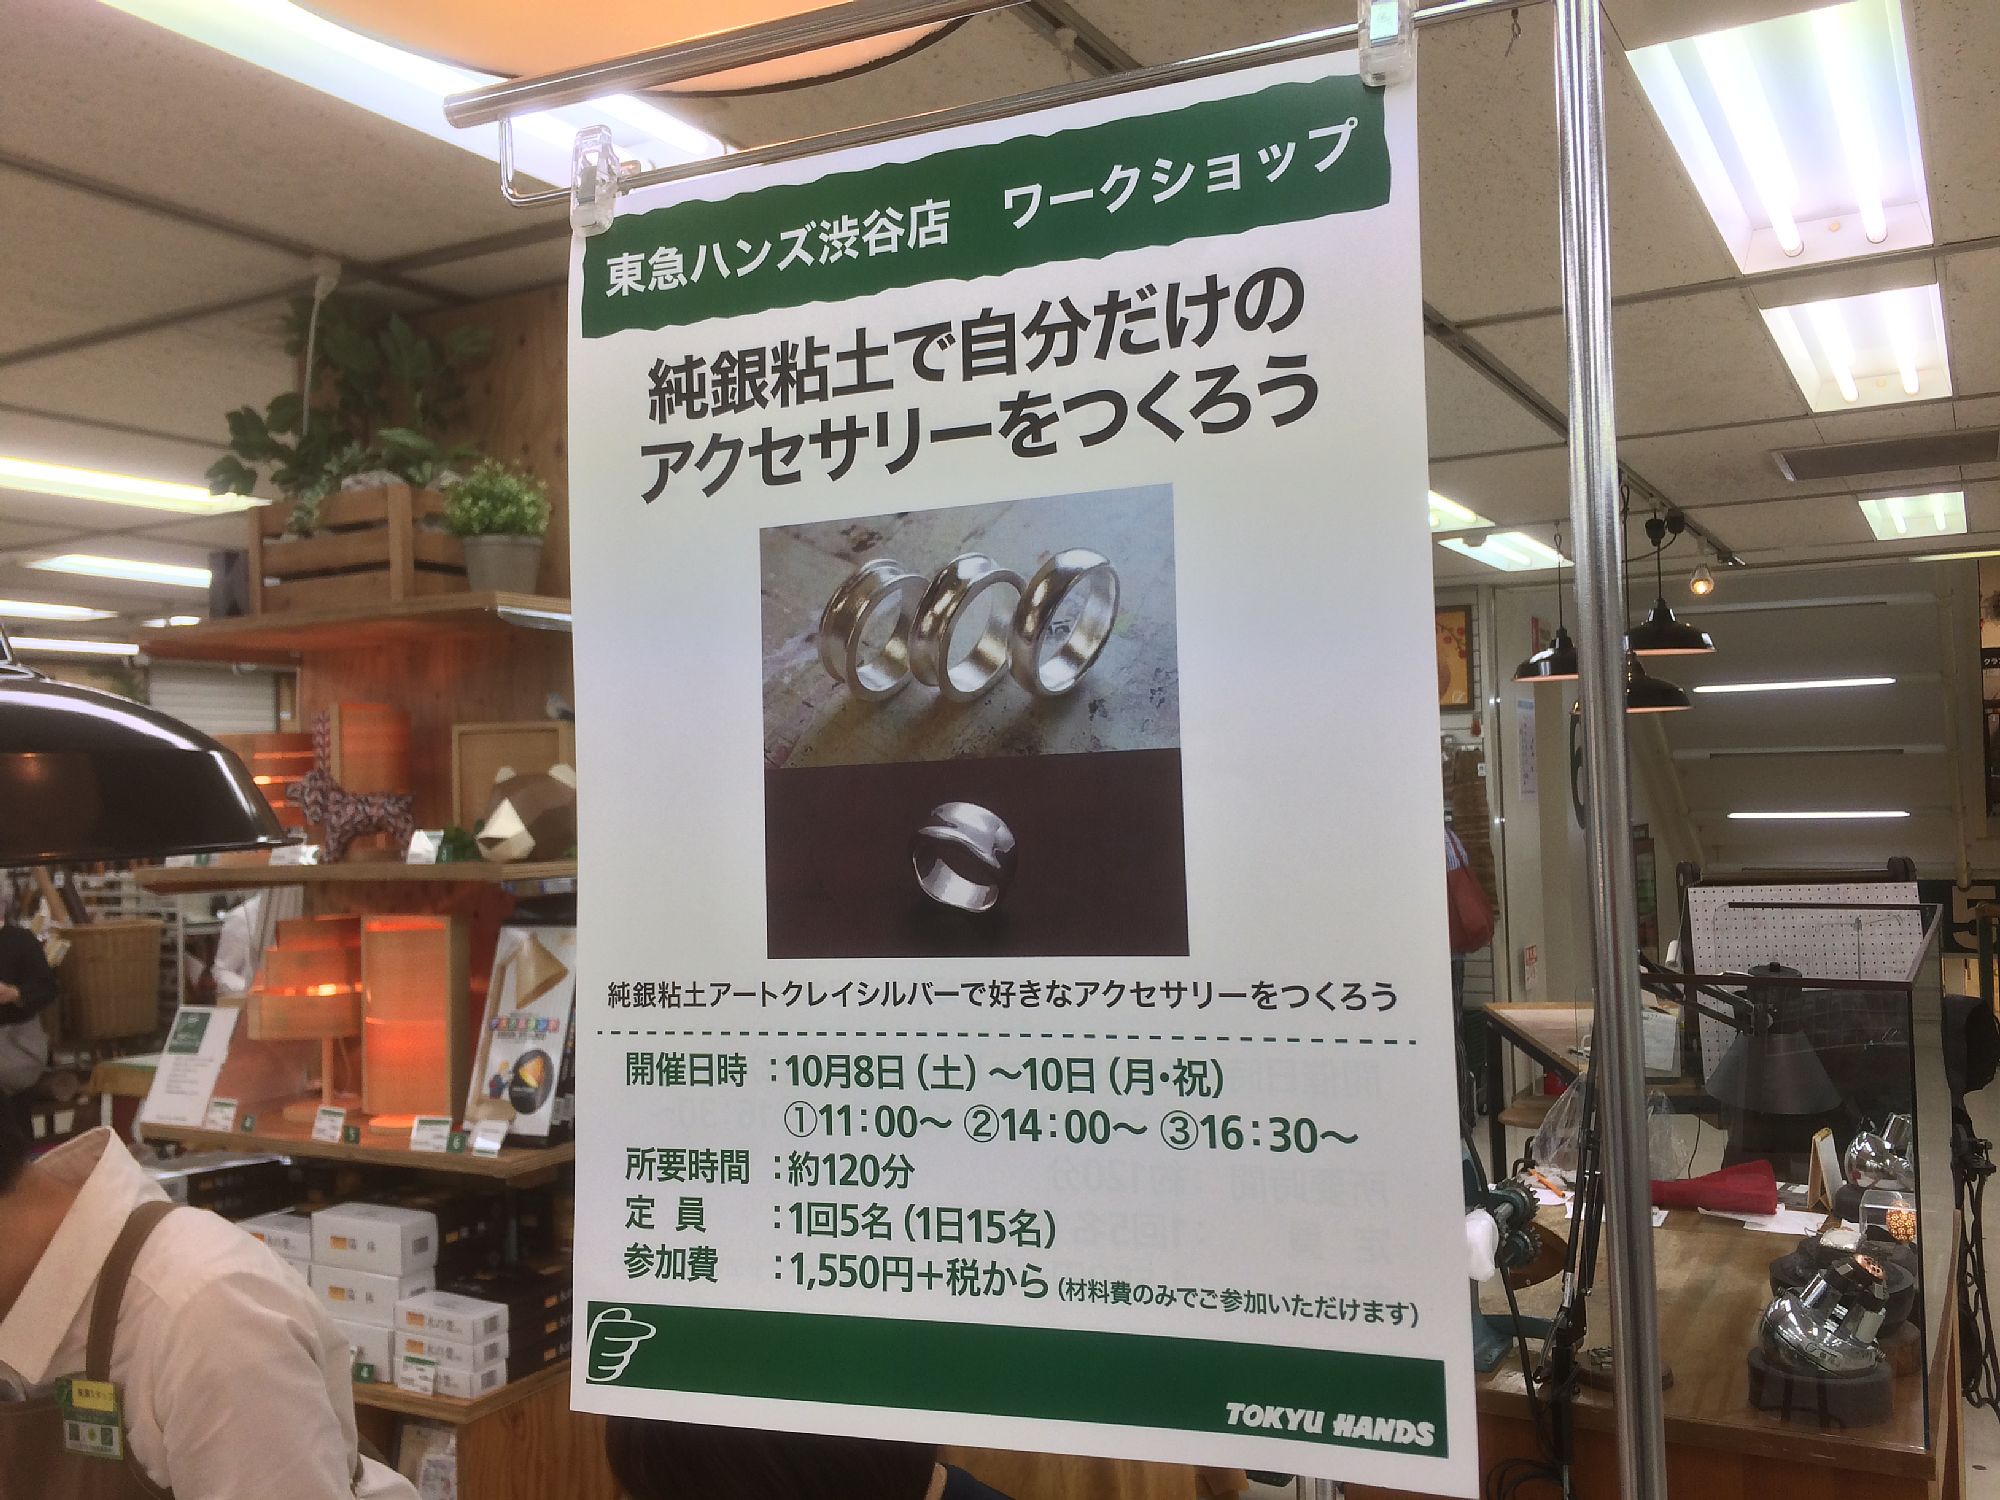 大満足の３時間 知らないことを学べるのはとても楽しい 渋谷東急ハンズのワークショップで初めてシルバーリングを製作しました 初心者ハンドメイドの作り方なら Momo工房ブログ